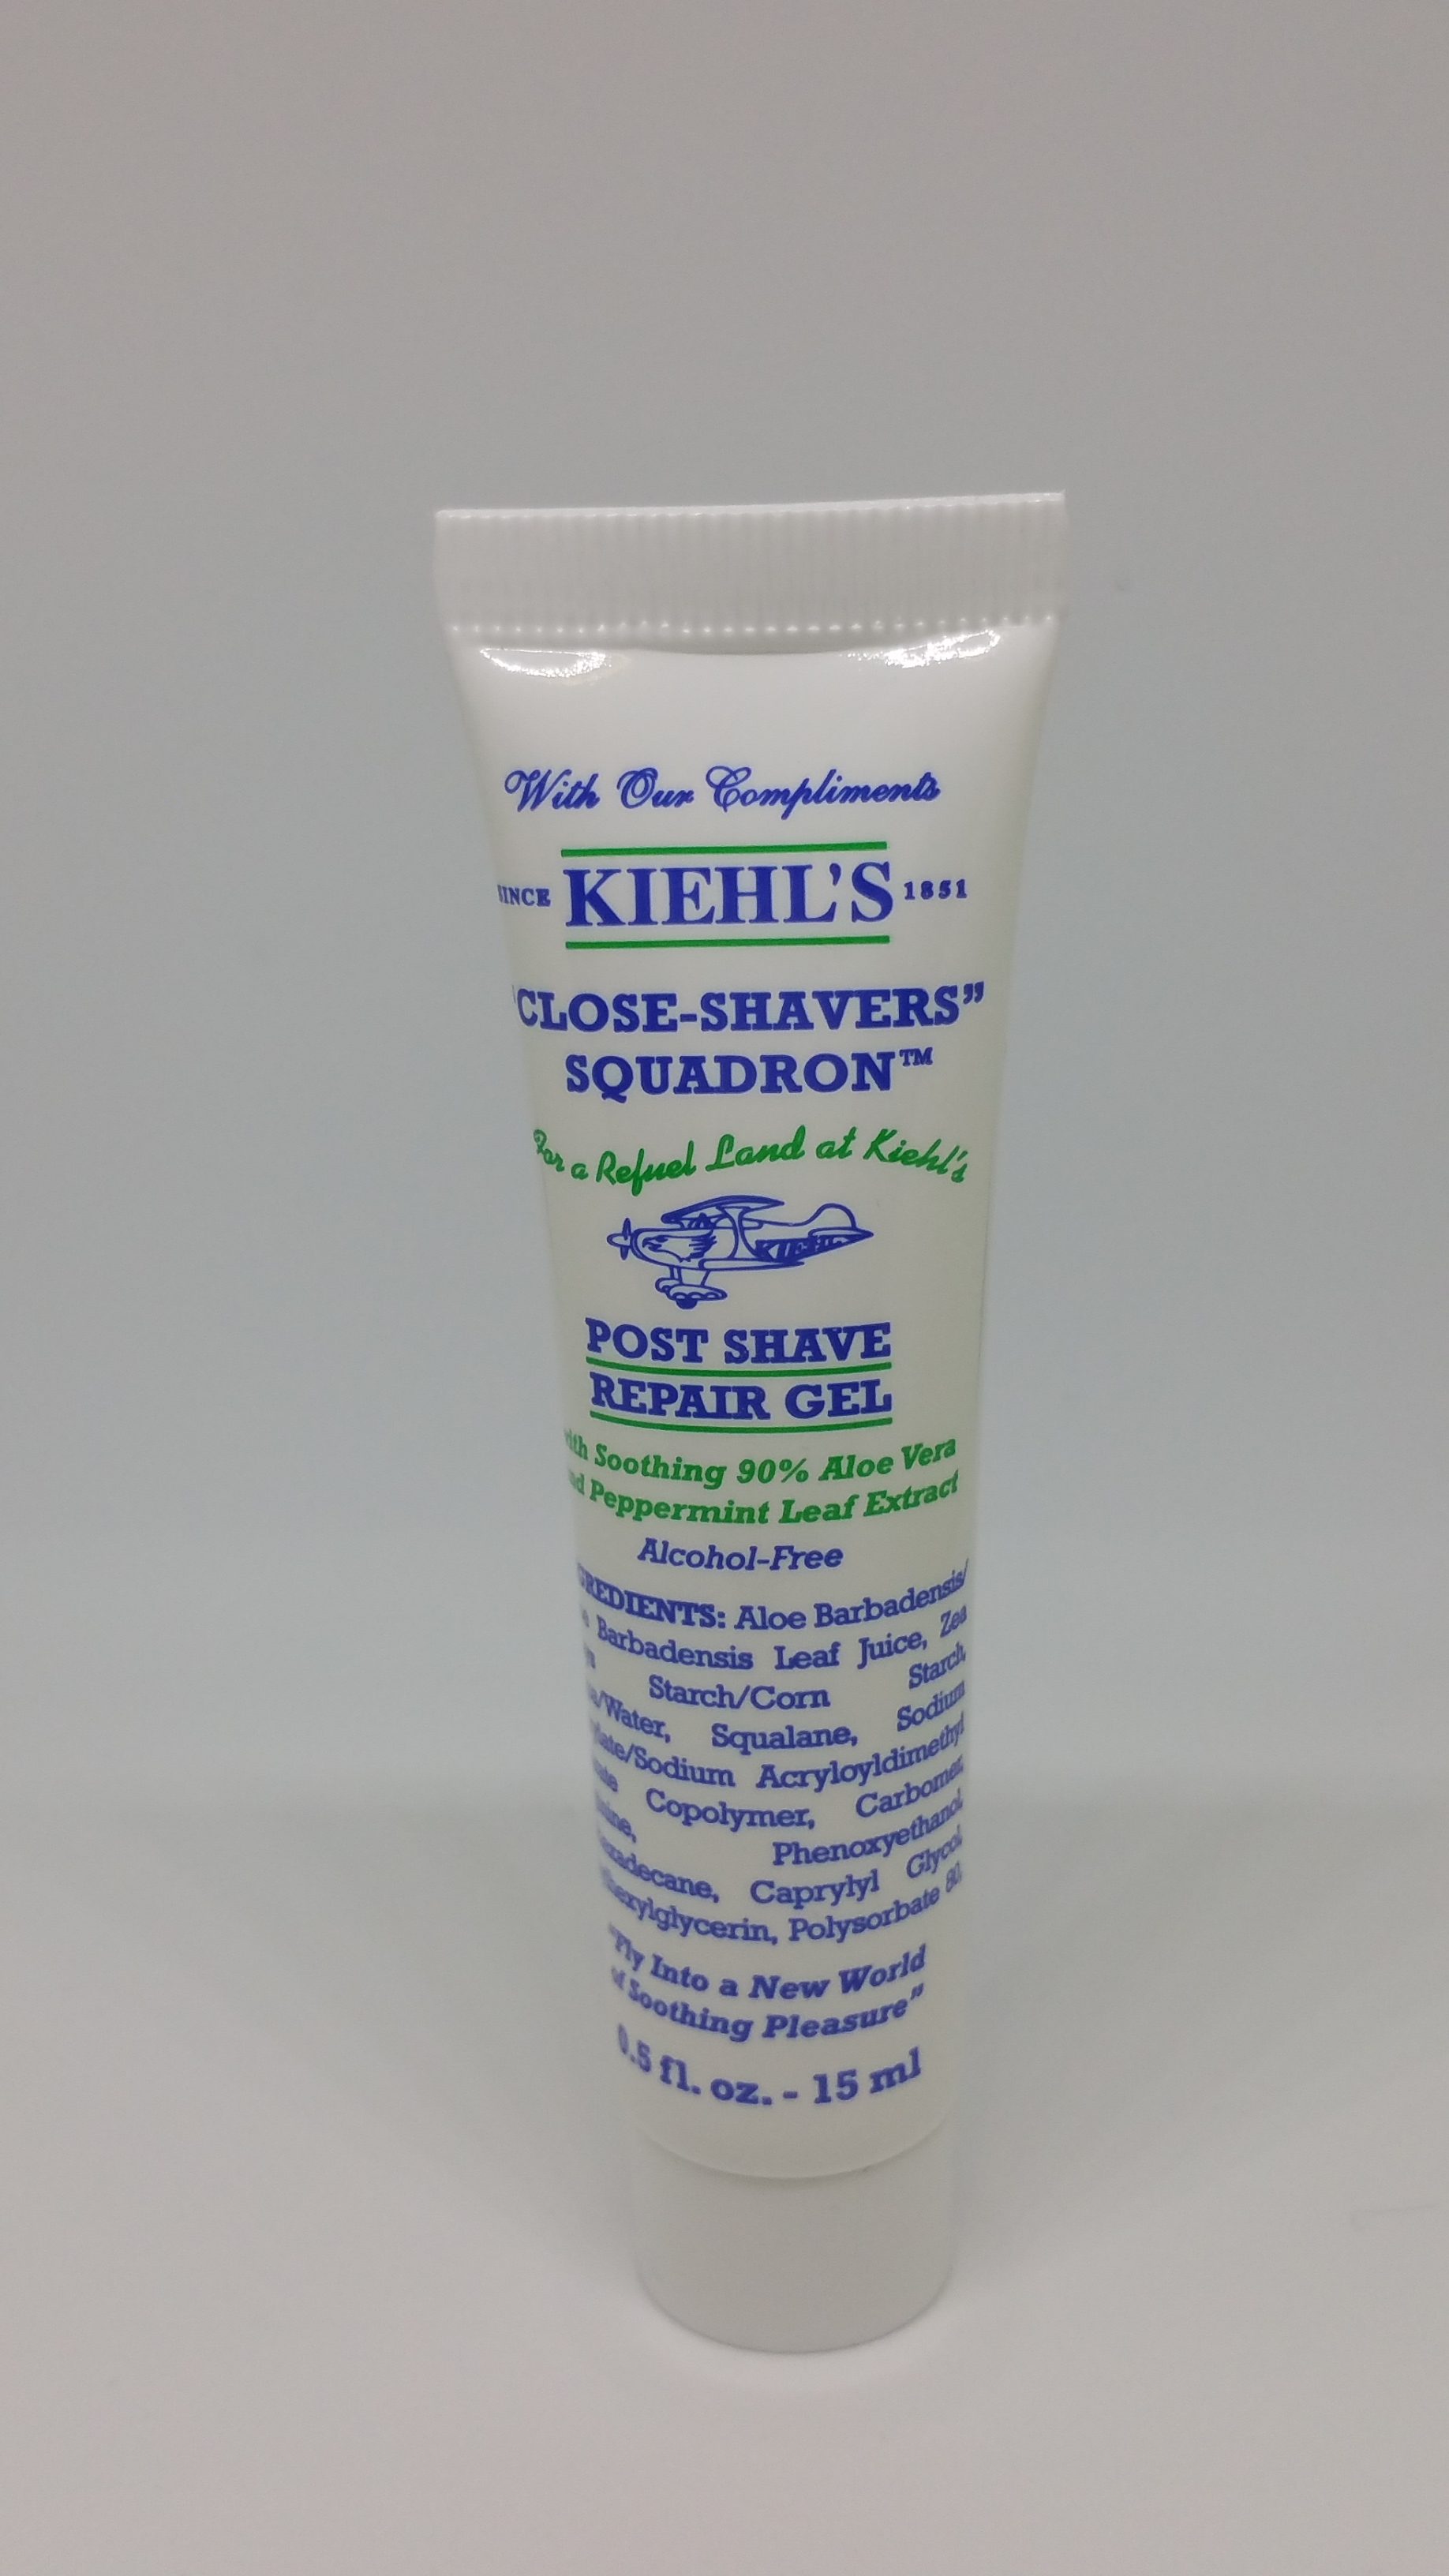 Kielh's Post Shave Repair Gel